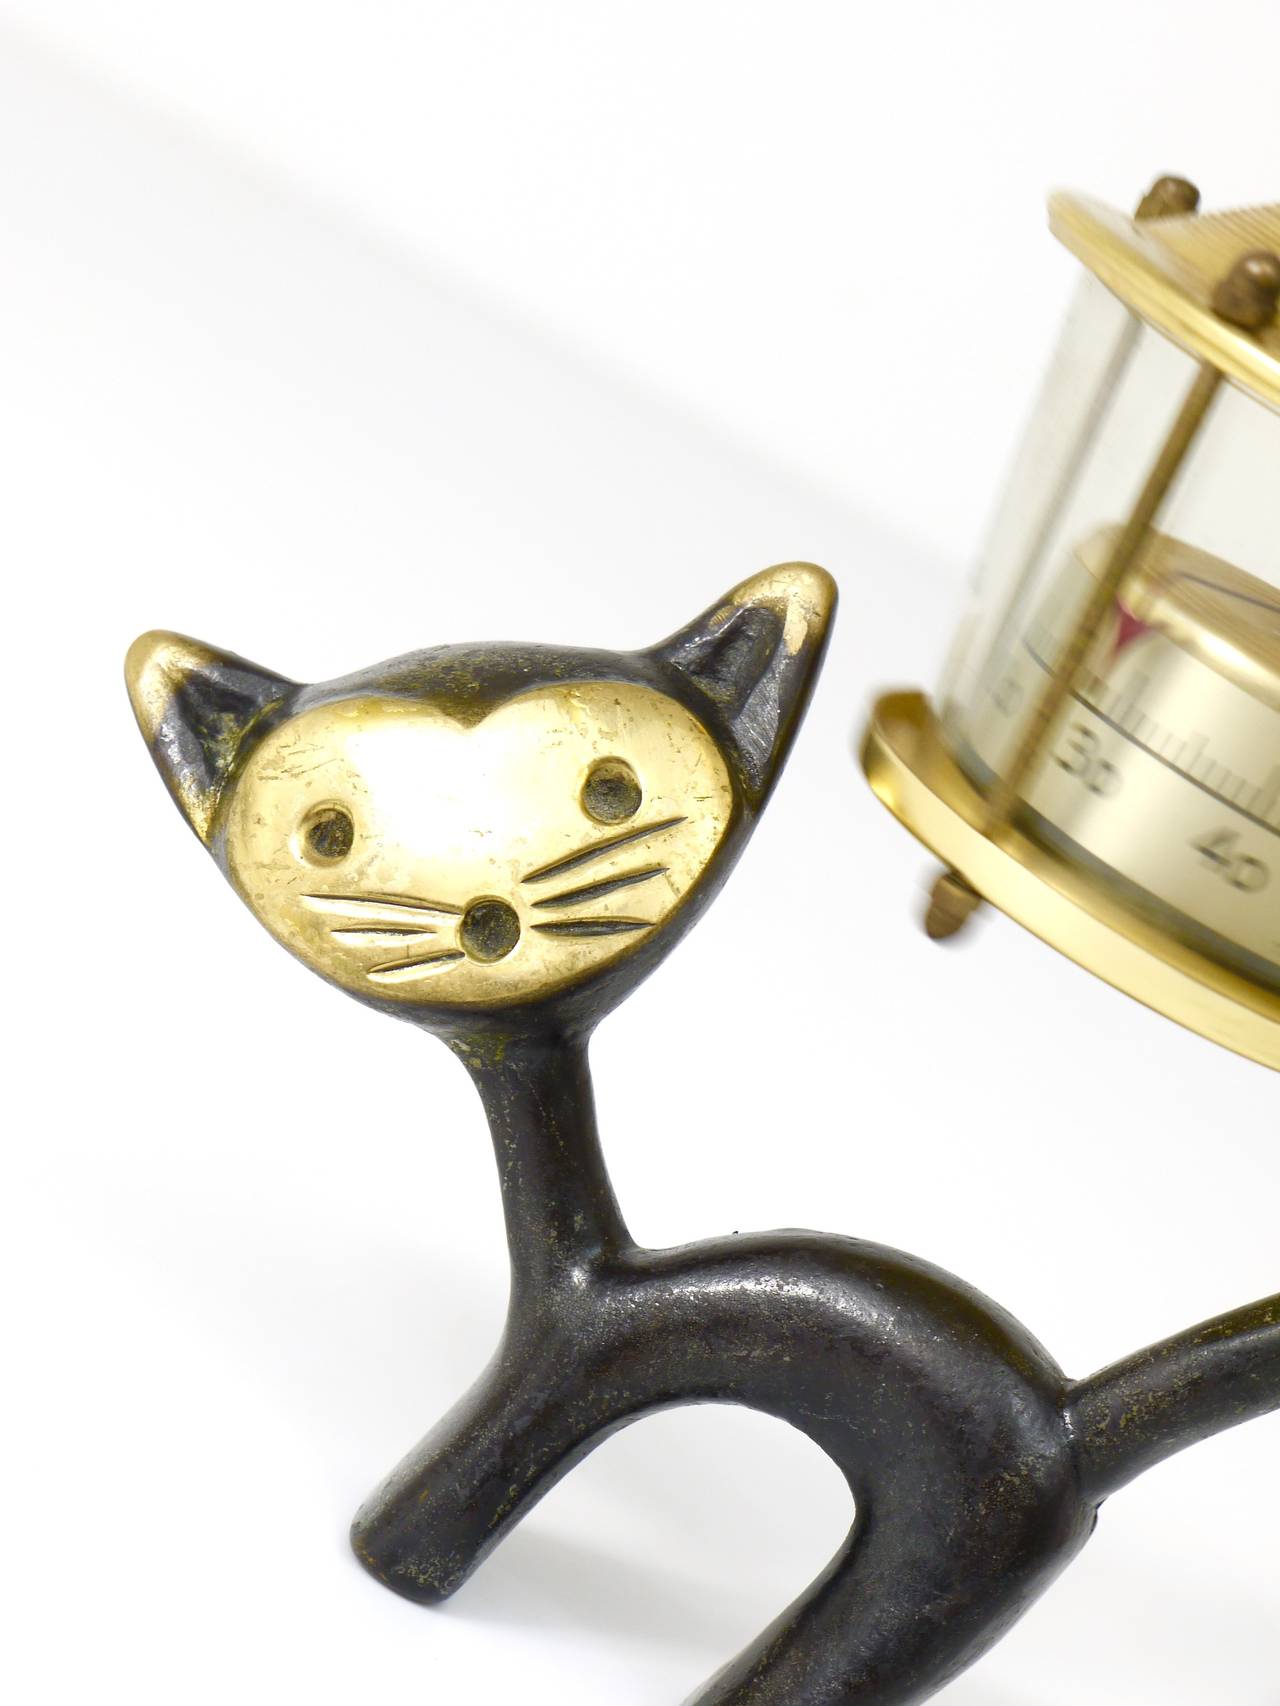 Charmant thermomètre de bureau autrichien, composé d'une adorable figurine de chat et d'un thermomètre en forme de lanterne. Un design humoristique de Walter Bosse, exécuté par Hertha Baller Austria dans les années 1950. En laiton, en très bon état,